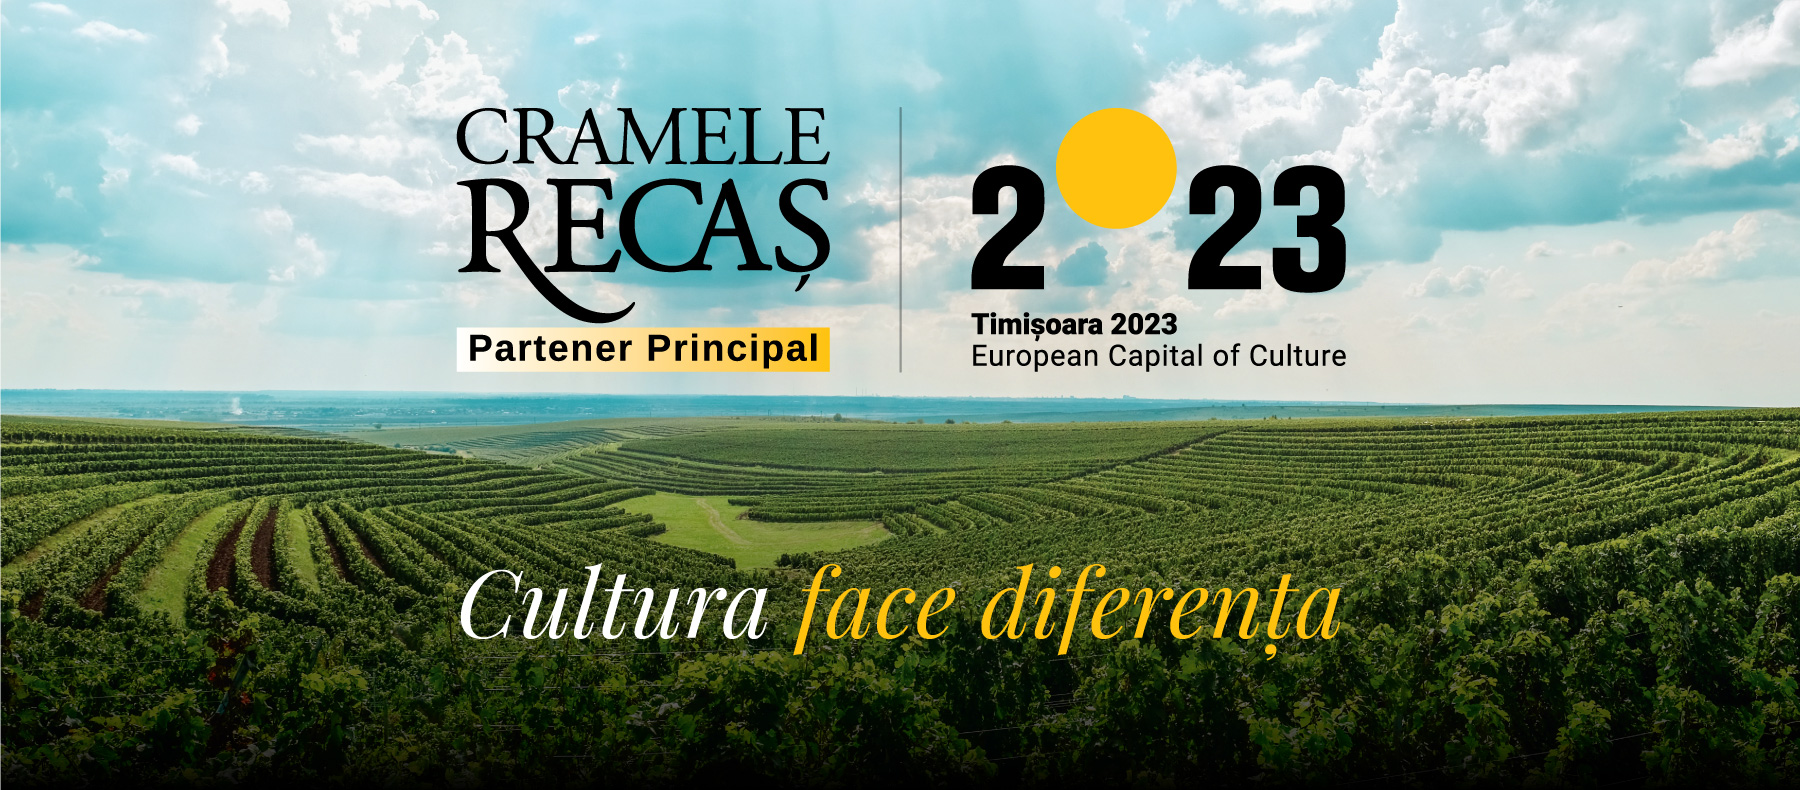 Cramele Recaș: partener principal al Timișoarei - Capitala Europeană a Culturii în 2023